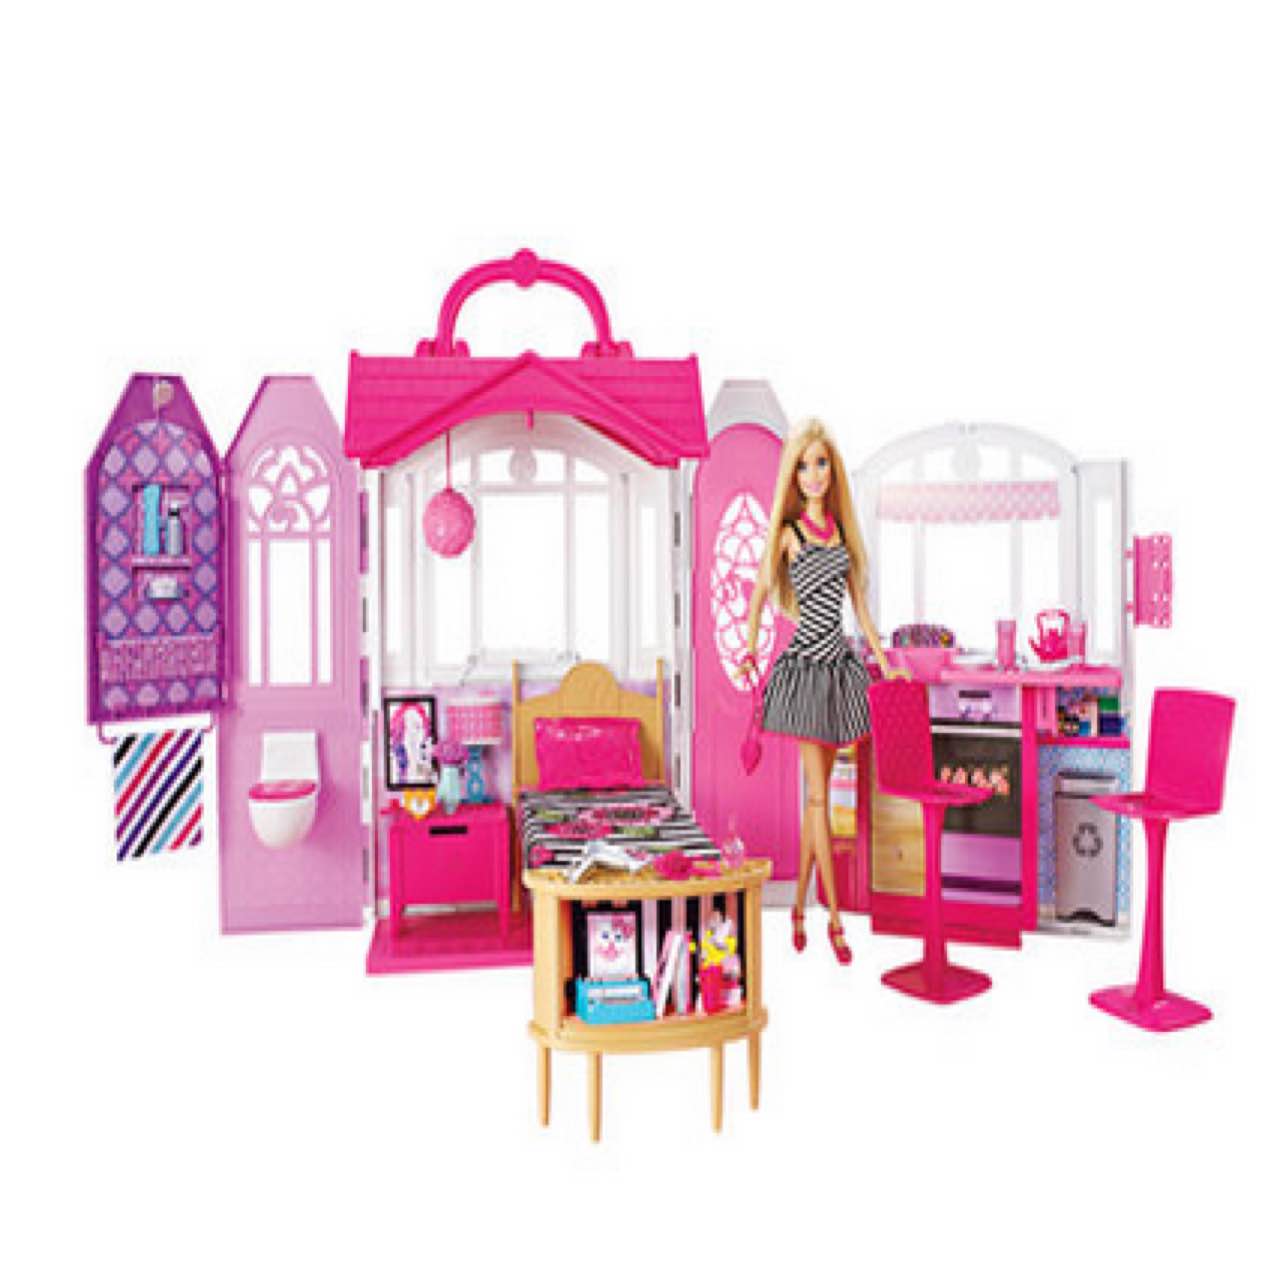 Barbie芭比闪亮度假屋豪华女孩玩具屋生日礼物芭比娃娃套装大礼盒